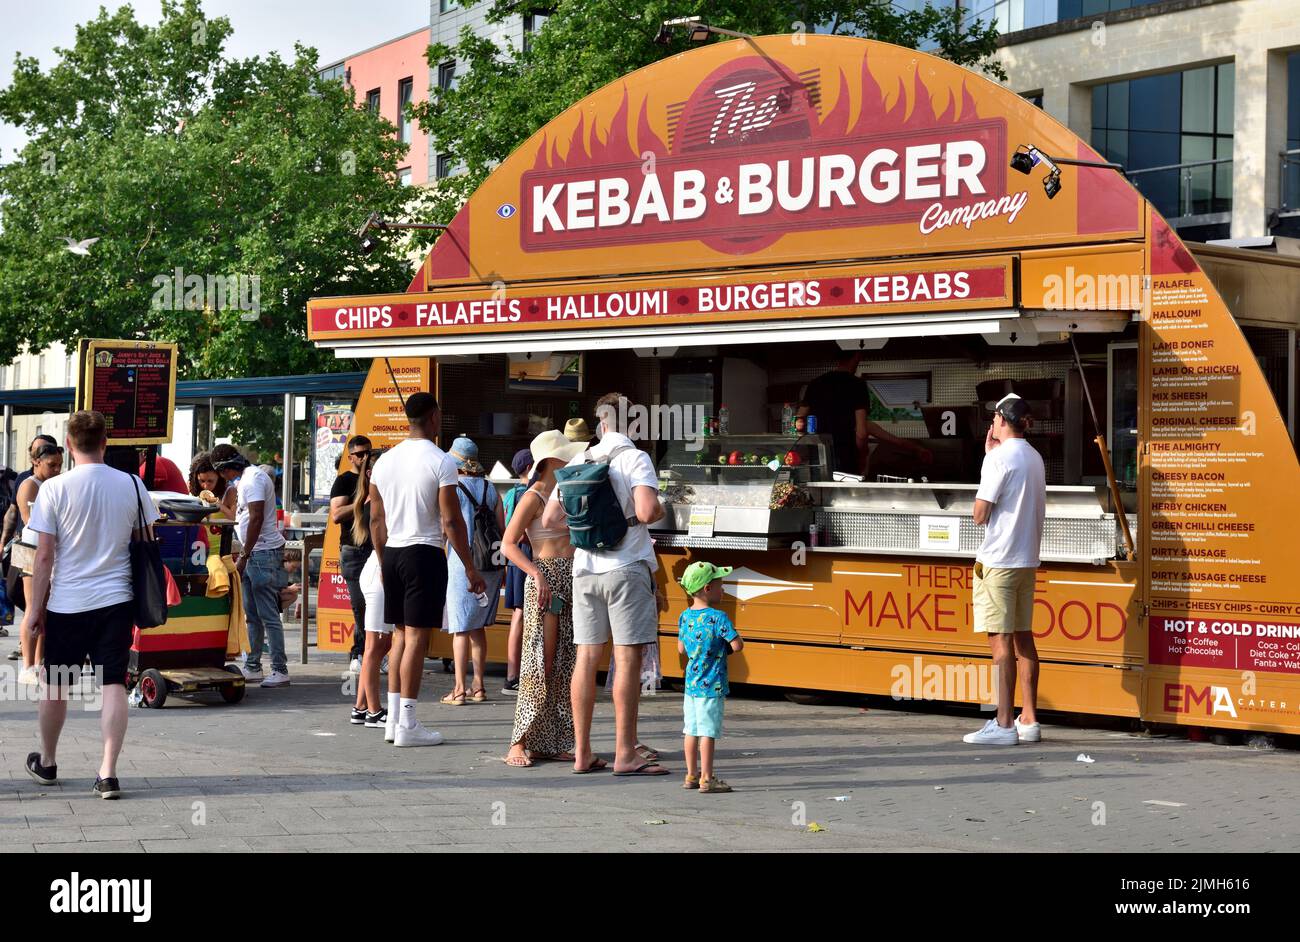 Centro de la ciudad de Bristol, comida rápida para llevar, puesto de venta de kebabs y hamburguesas, Reino Unido Foto de stock